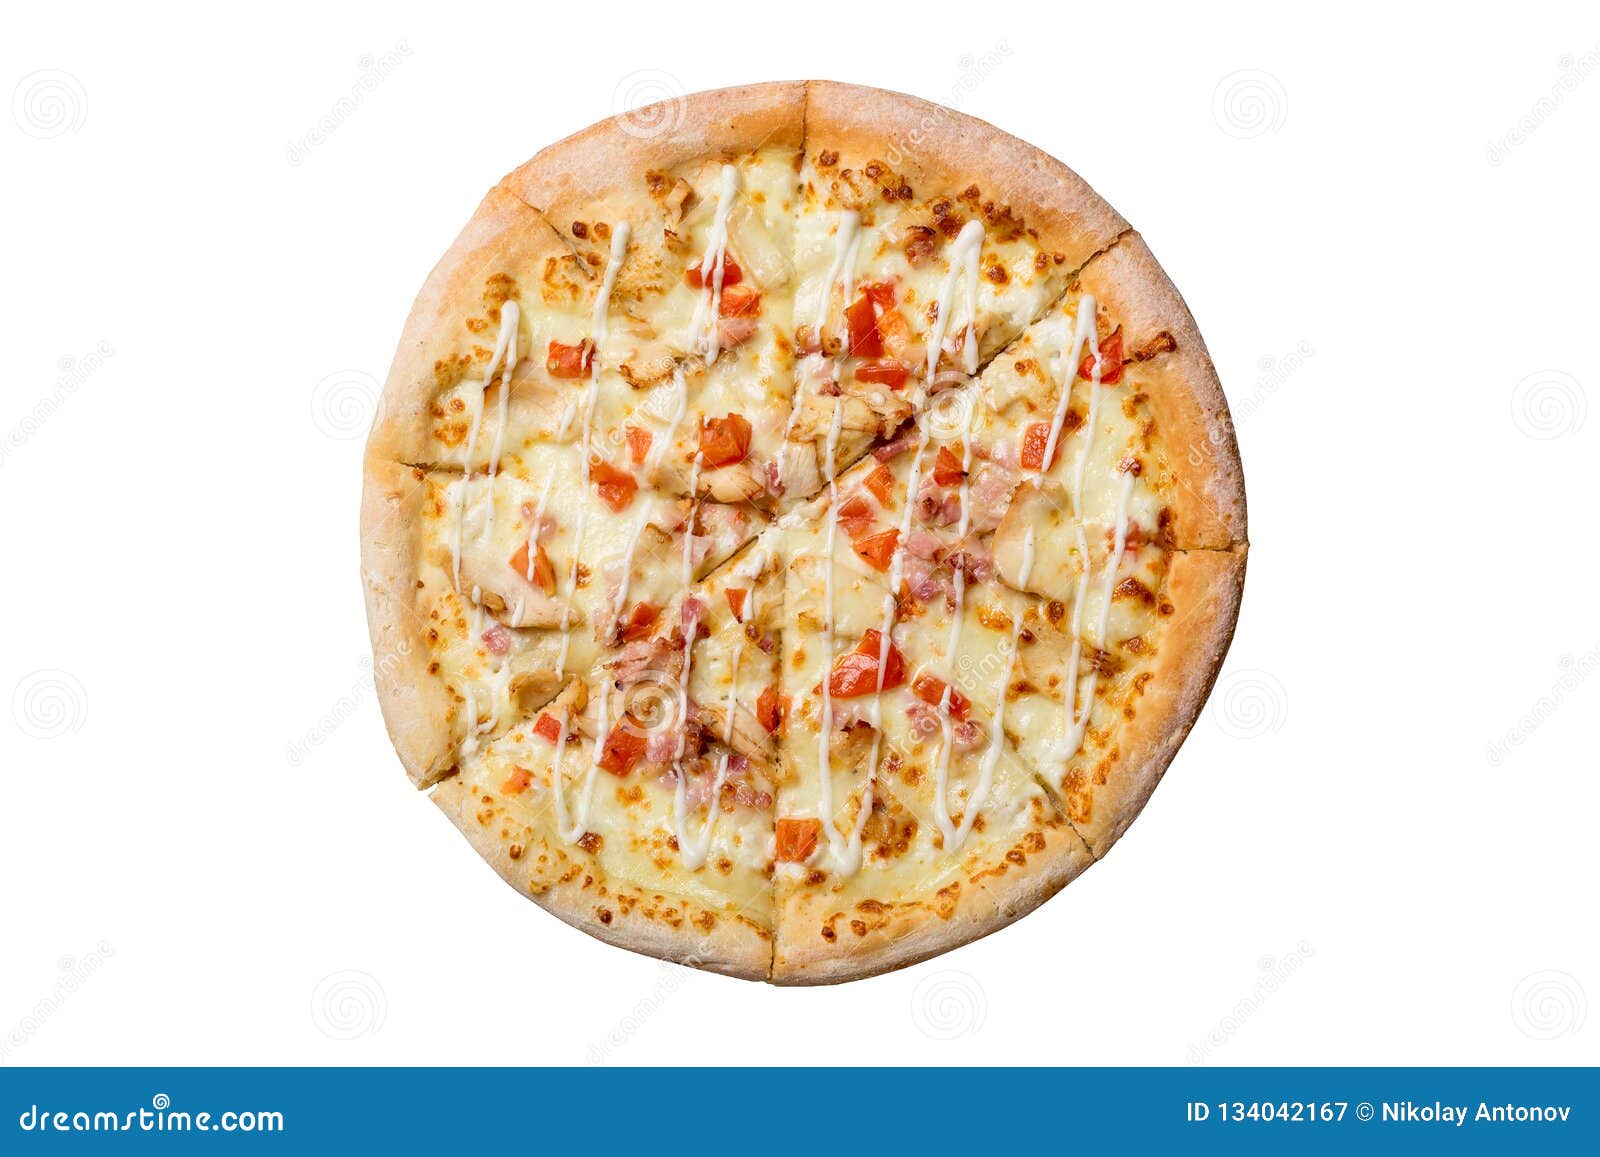 пицца гавайская на белом фоне фото 115